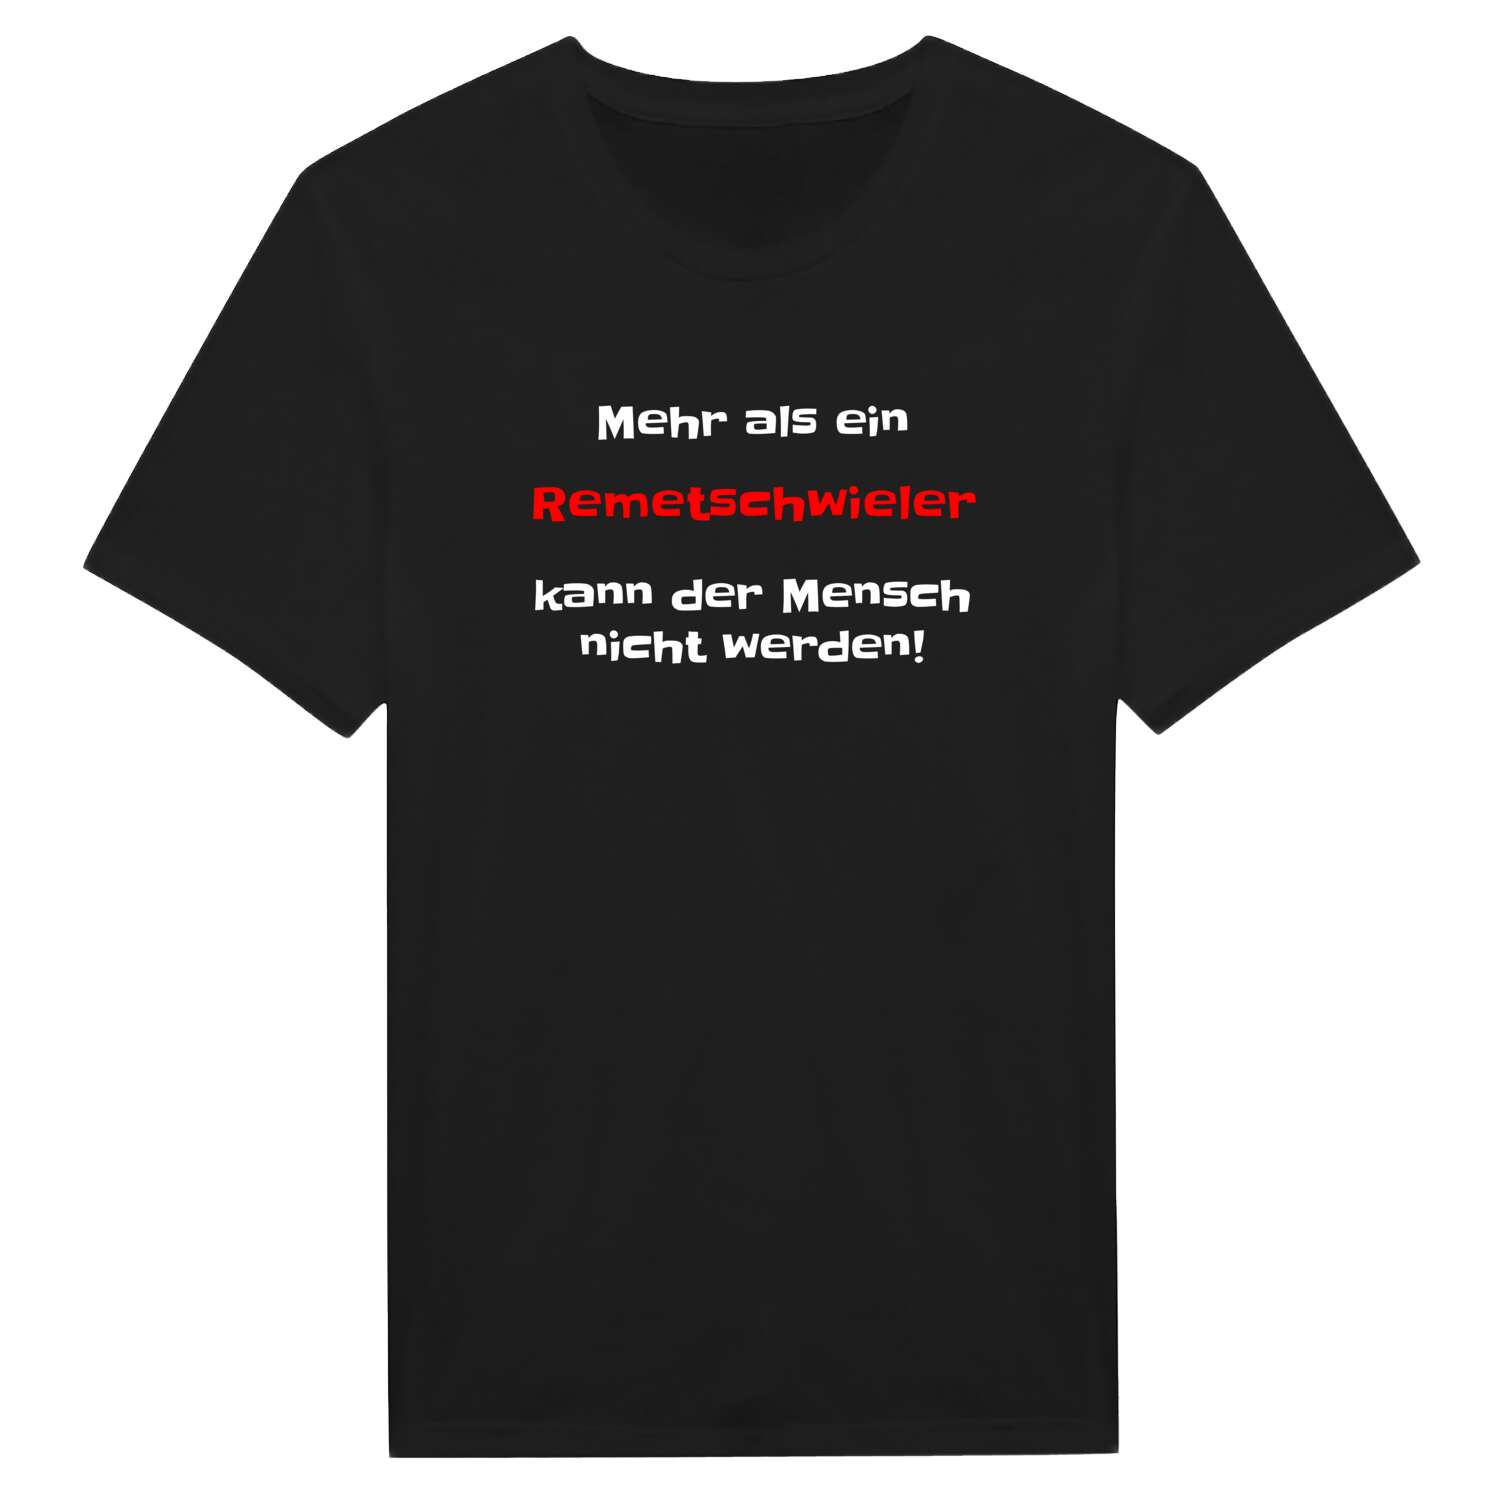 Remetschwiel T-Shirt »Mehr als ein«